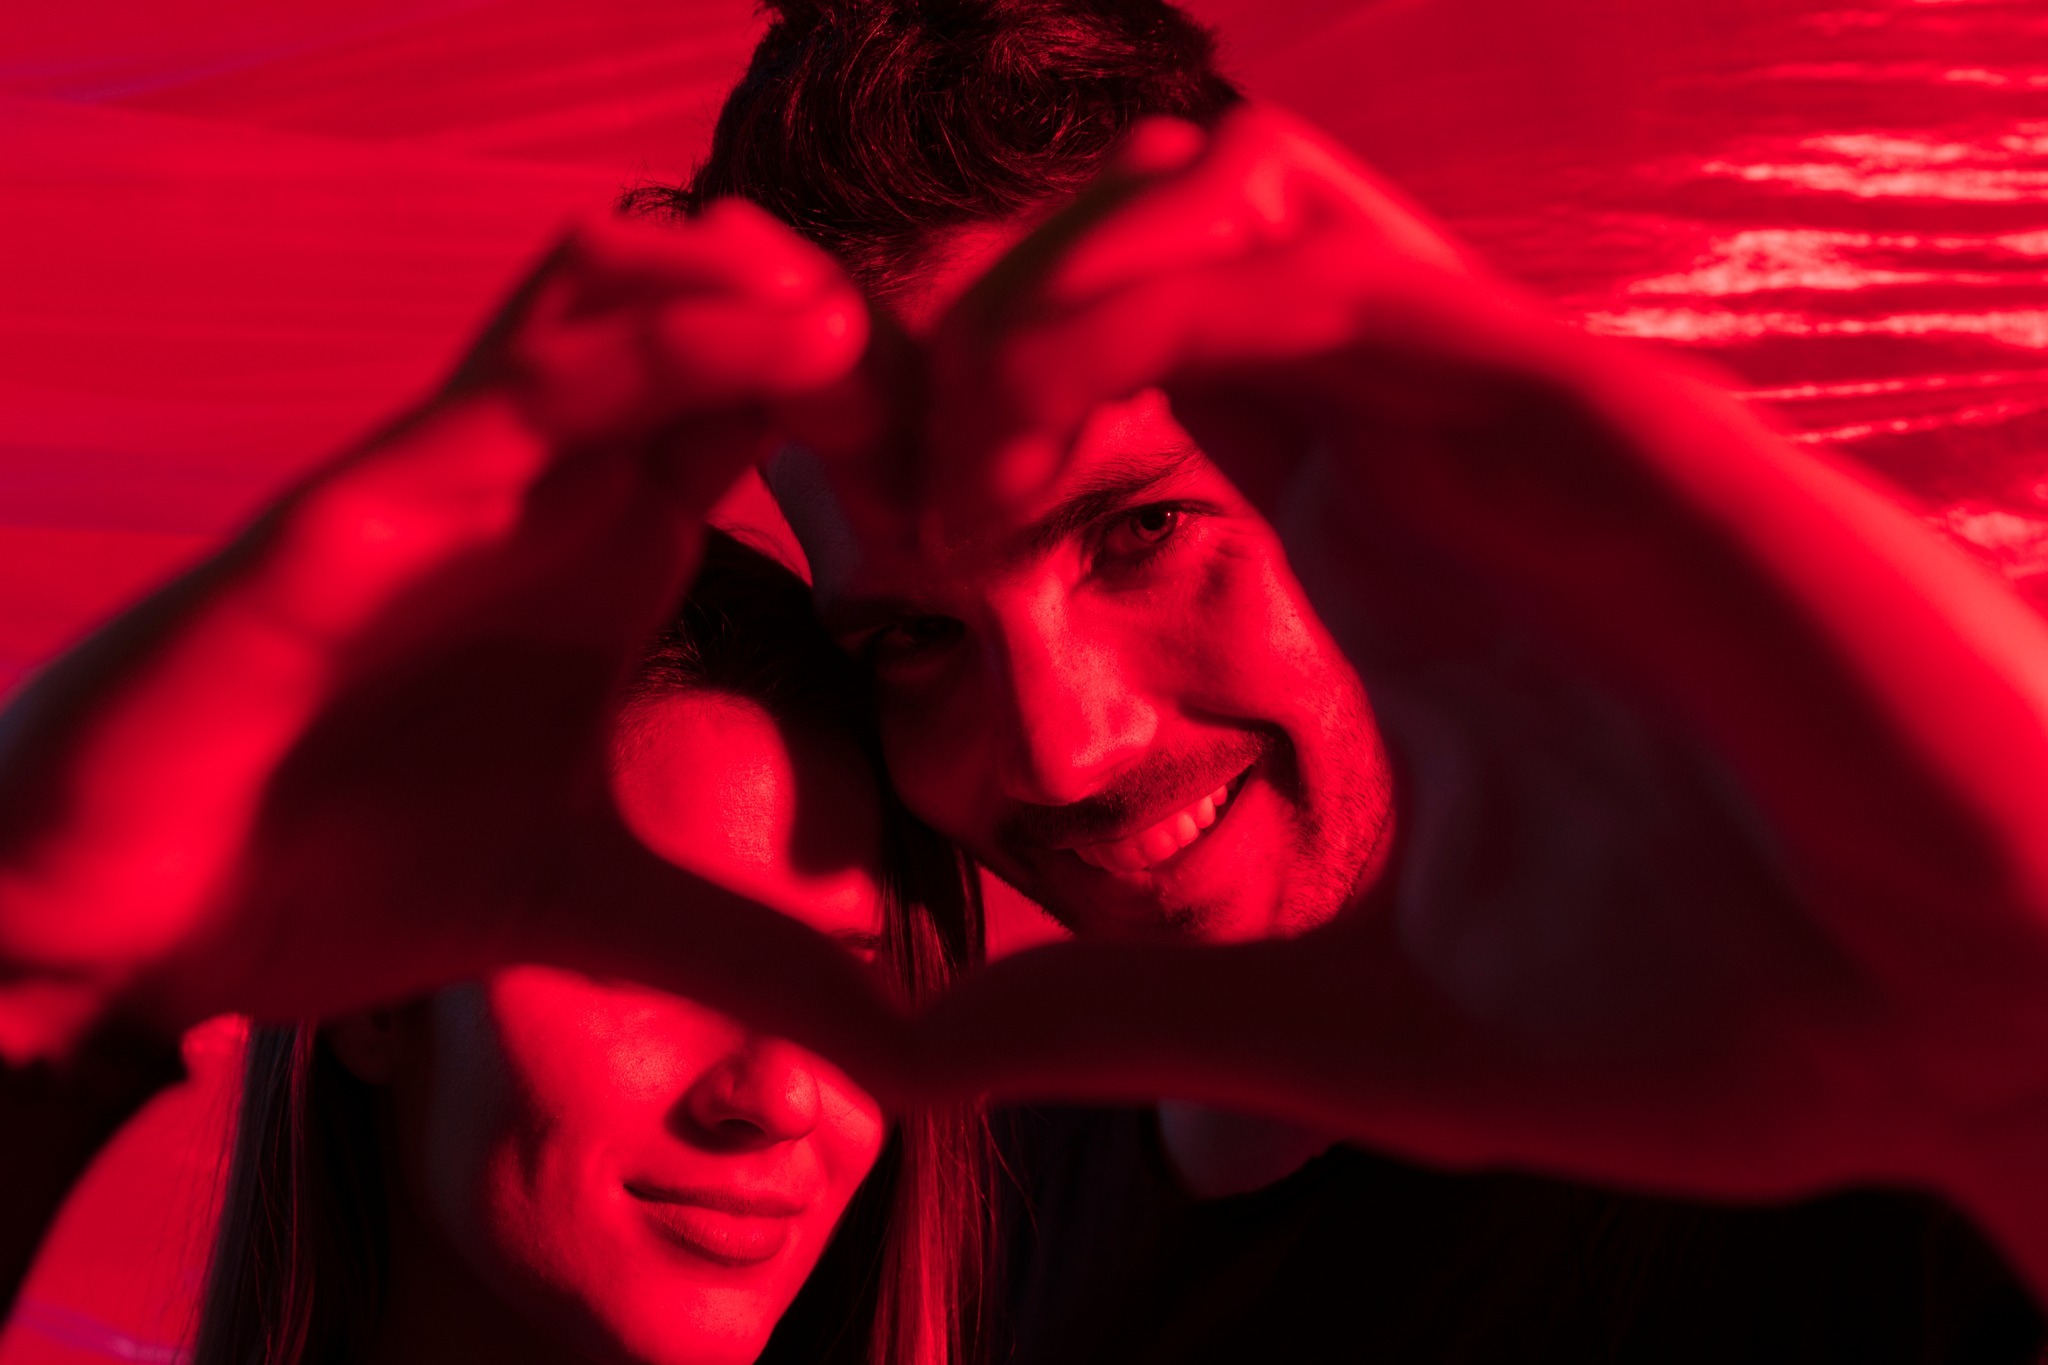 La imagen en color rojo de una pareja formando un corazón con sus manos 